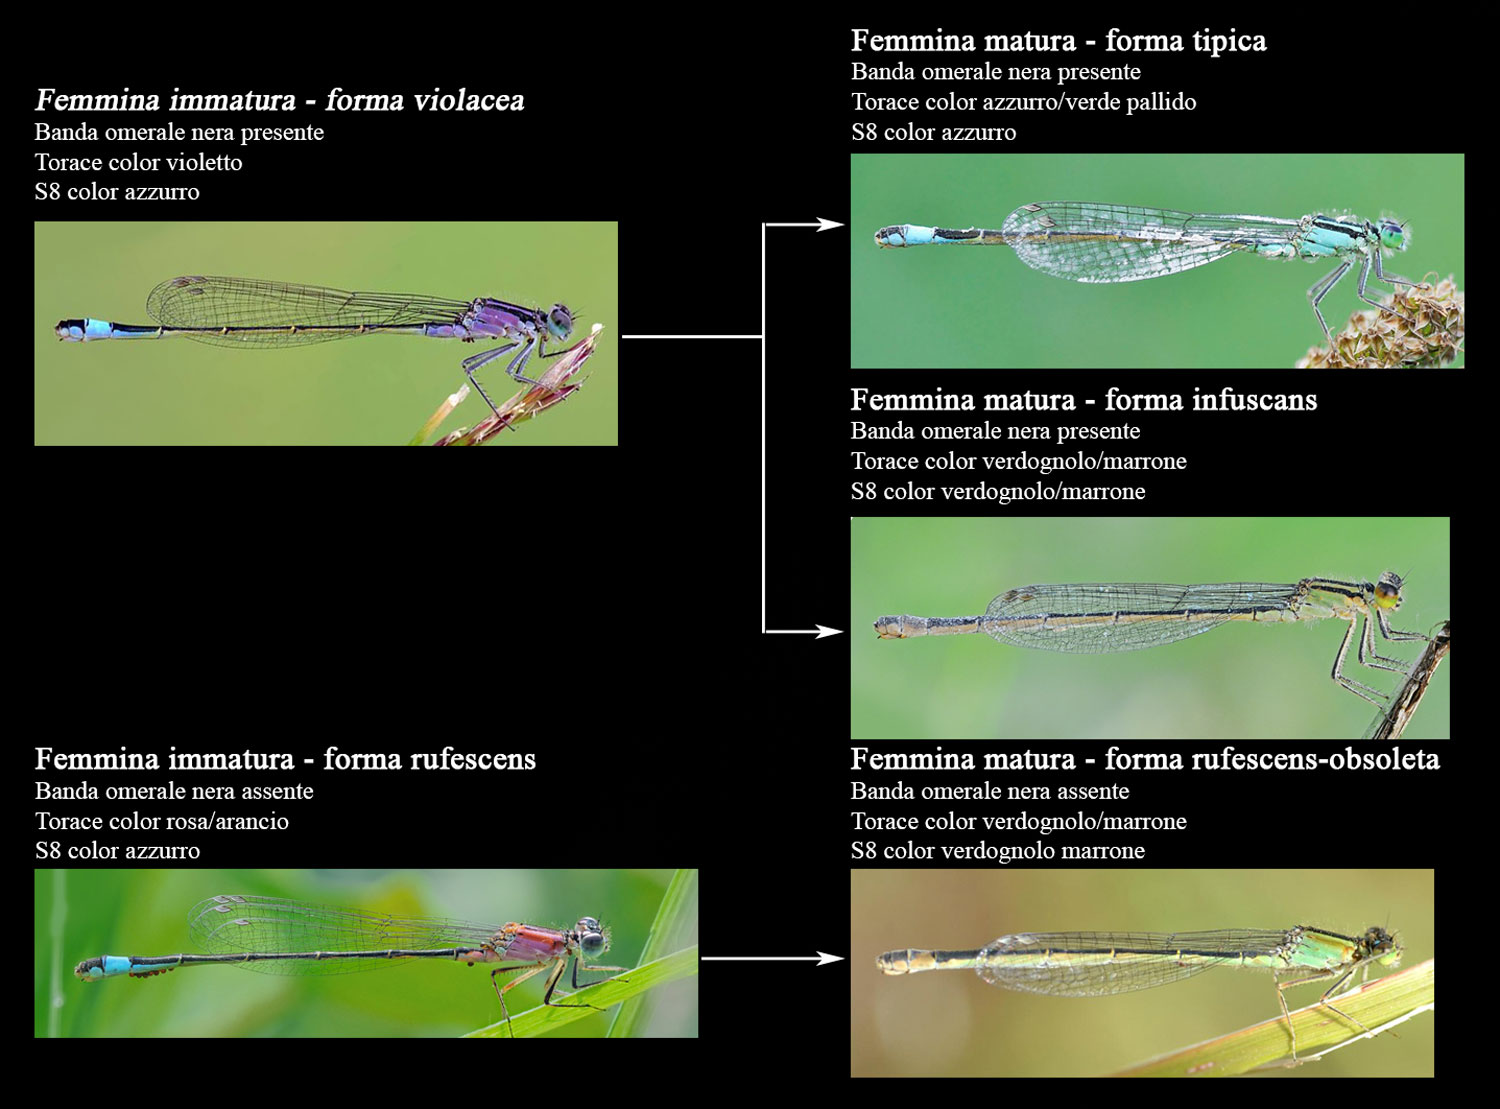 Ischnura elegans (femmina immatura f. rufescens)